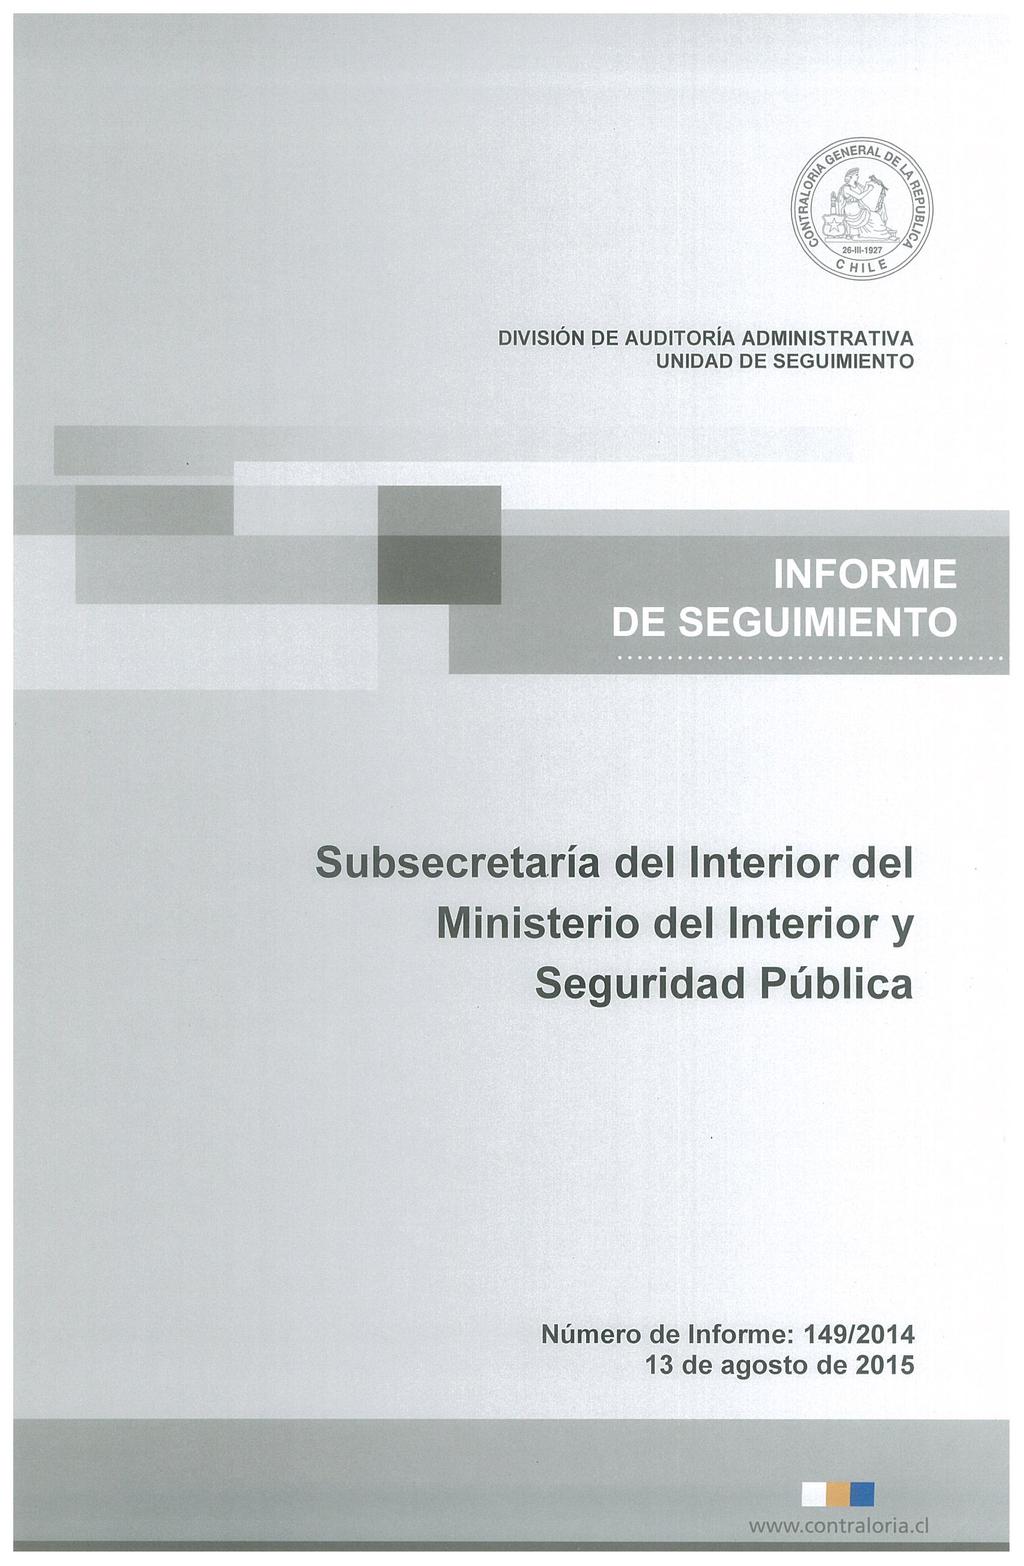 DIVISIÓN DE AUDITORÍA ADMINISTRATIVA INFORME DE SEGUIMIENTO Subsecretaría del Interior del Ministerio